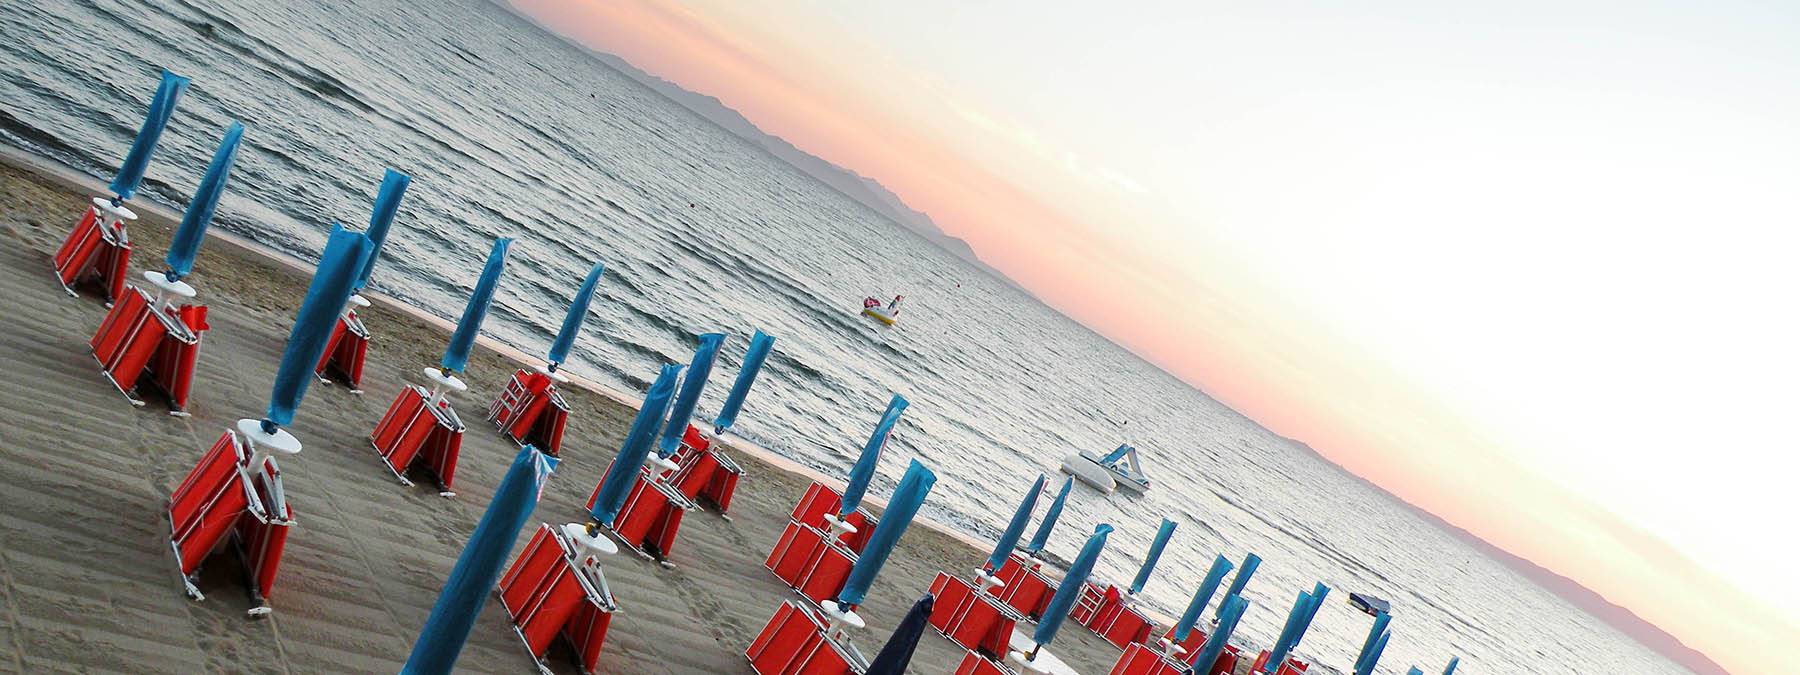 Vacanze in famiglia in hotel con ristorante e spiaggia in Toscana